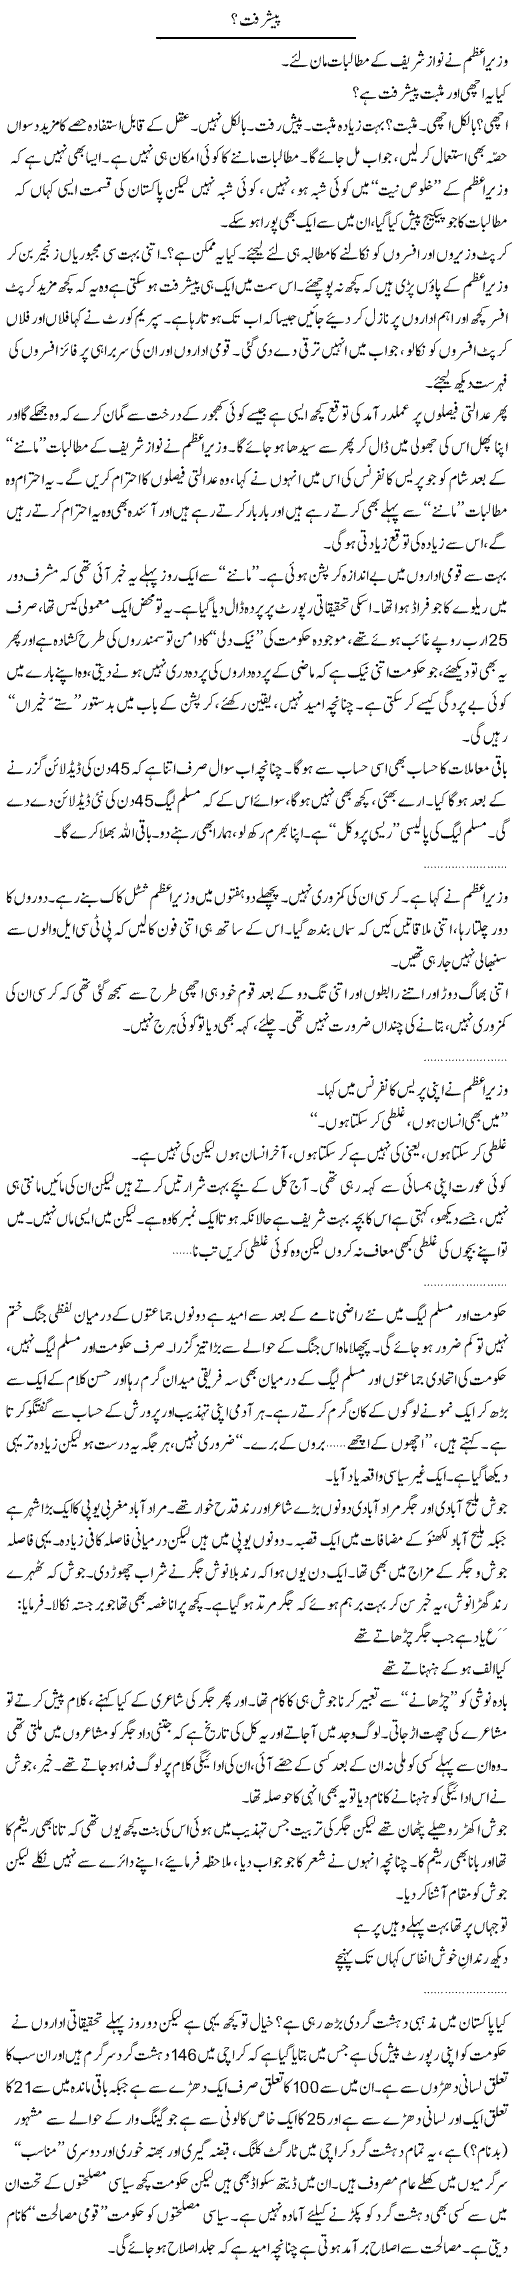 Nawaz and Geelani Express Column Abdullah Tariq 11 January 2011